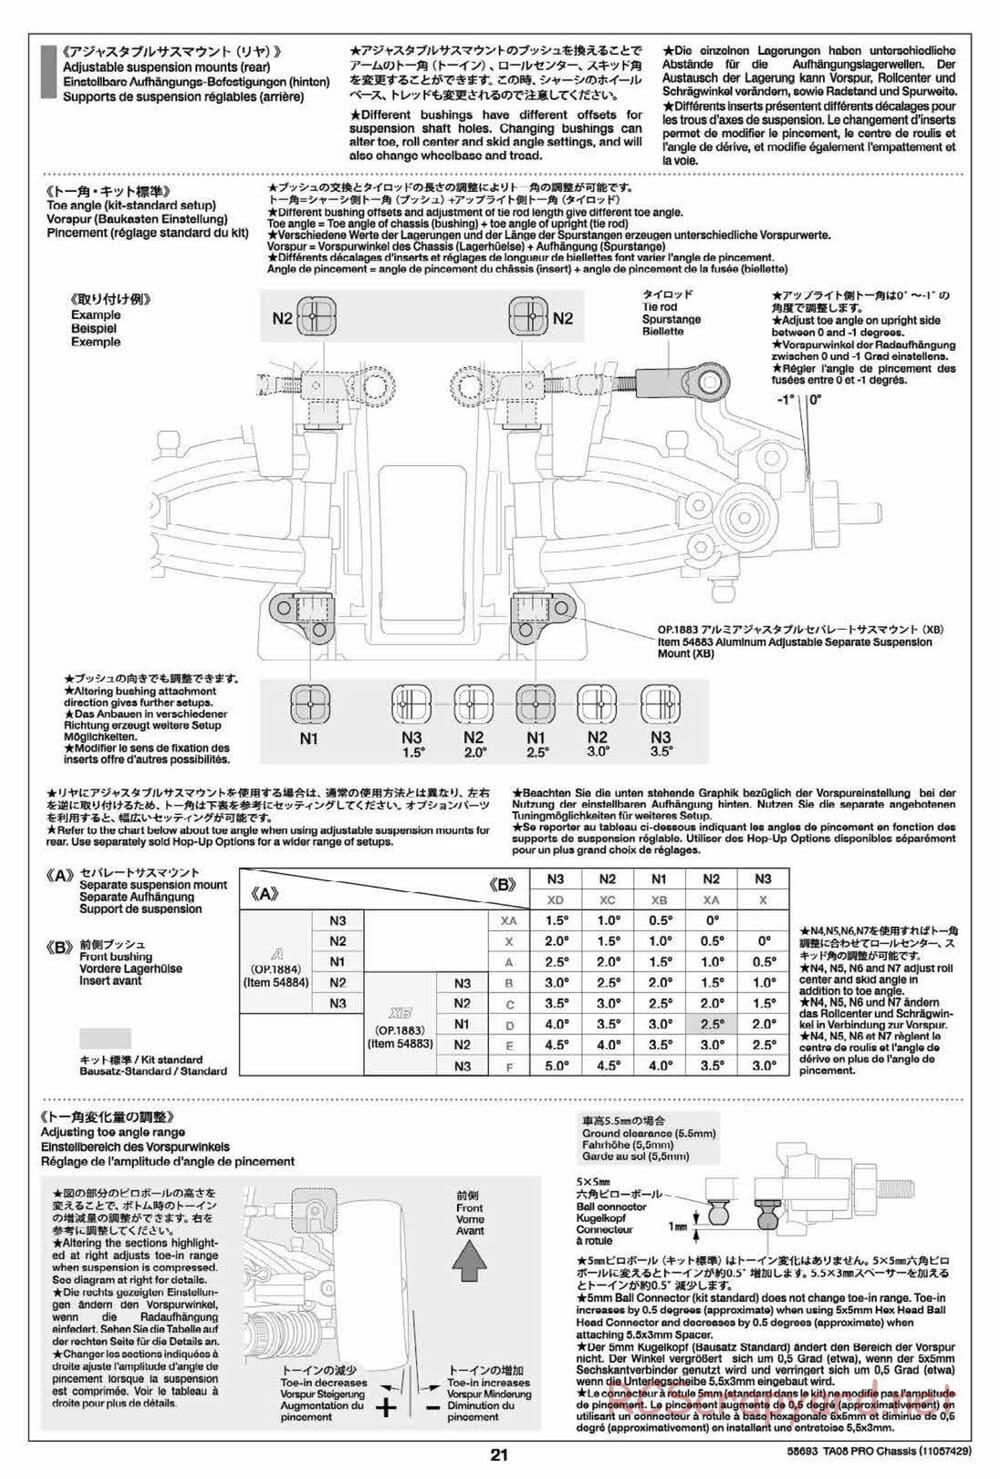 Tamiya - TA08 Pro Chassis - Manual - Page 21